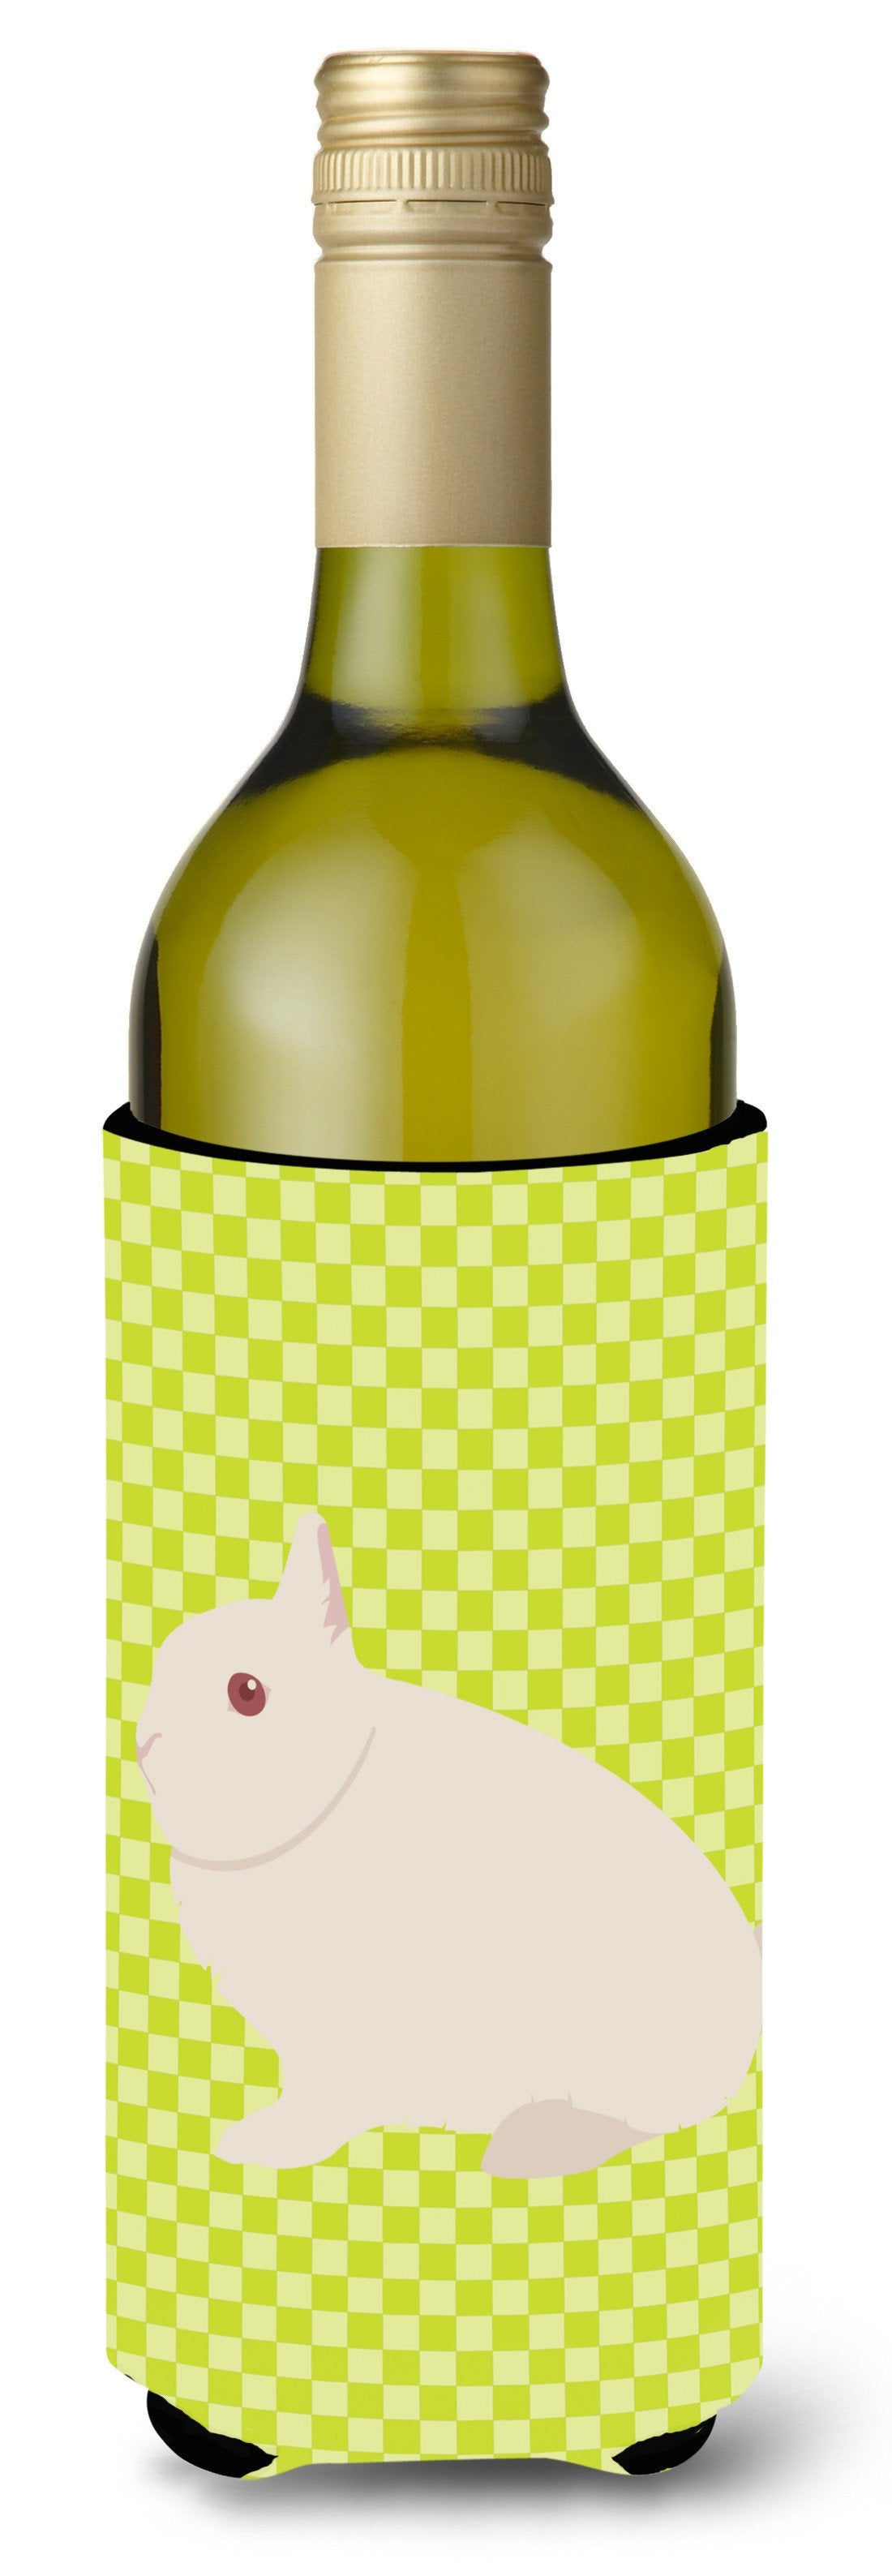 Hermelin Rabbit Green Wine Bottle Beverge Insulator Hugger BB7790LITERK by Caroline's Treasures